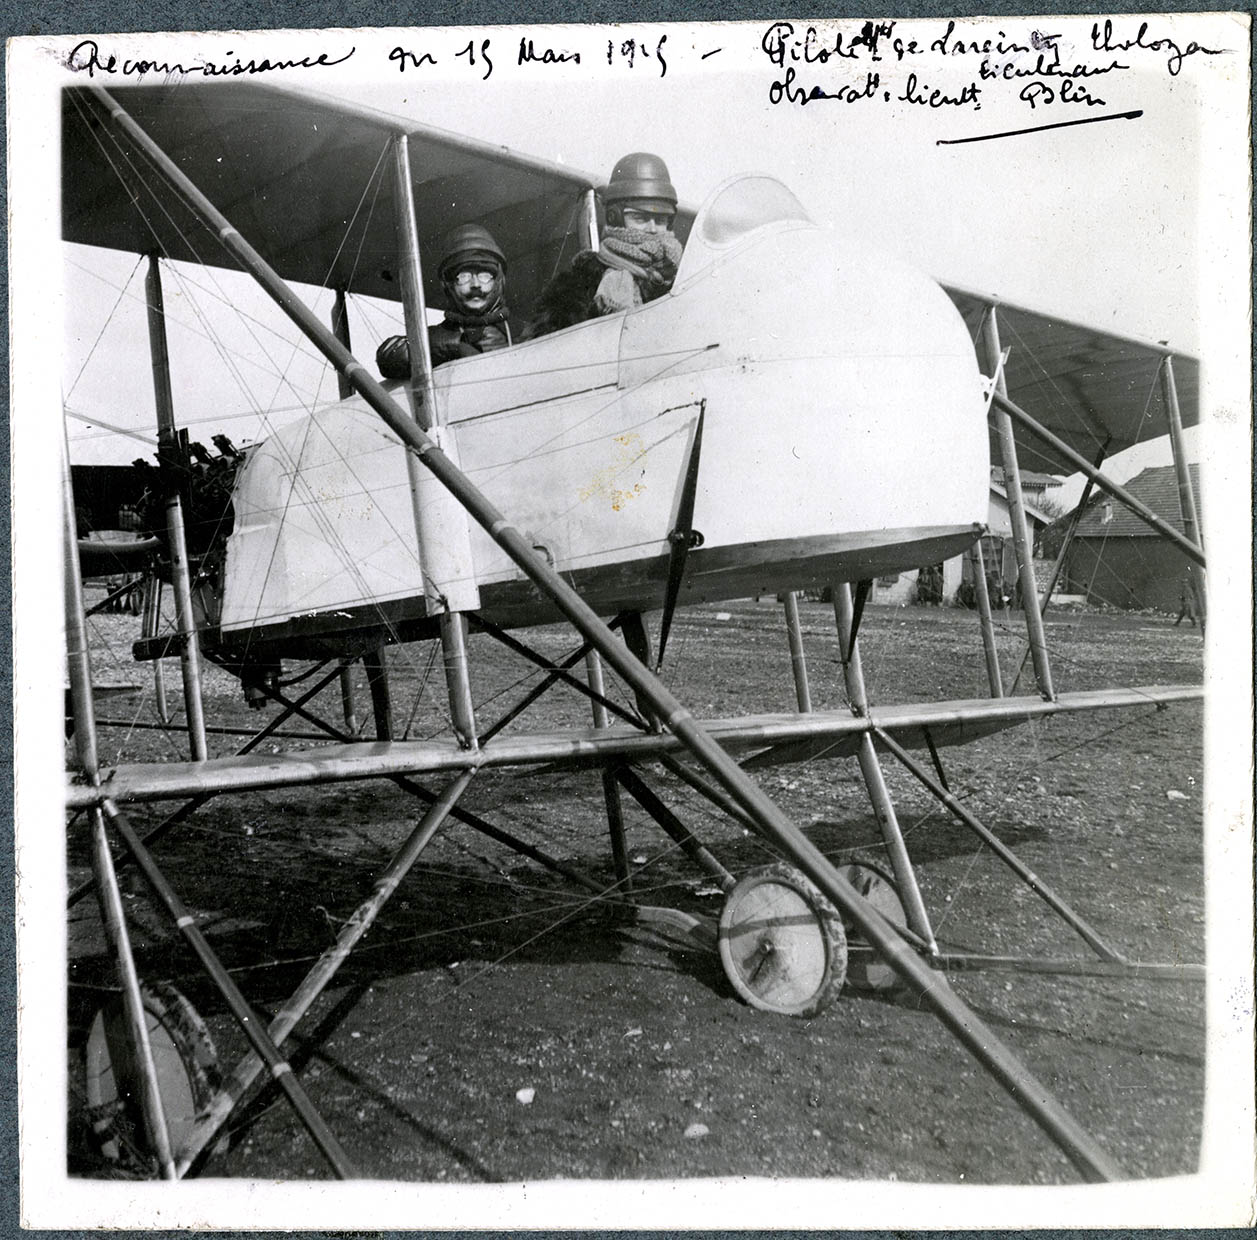 Belfort, Centre aéronautique militaire, Champ-de-Mars (Parc-à-Ballons), devant les hangars des aéroplanes, le 15 mars 1915.